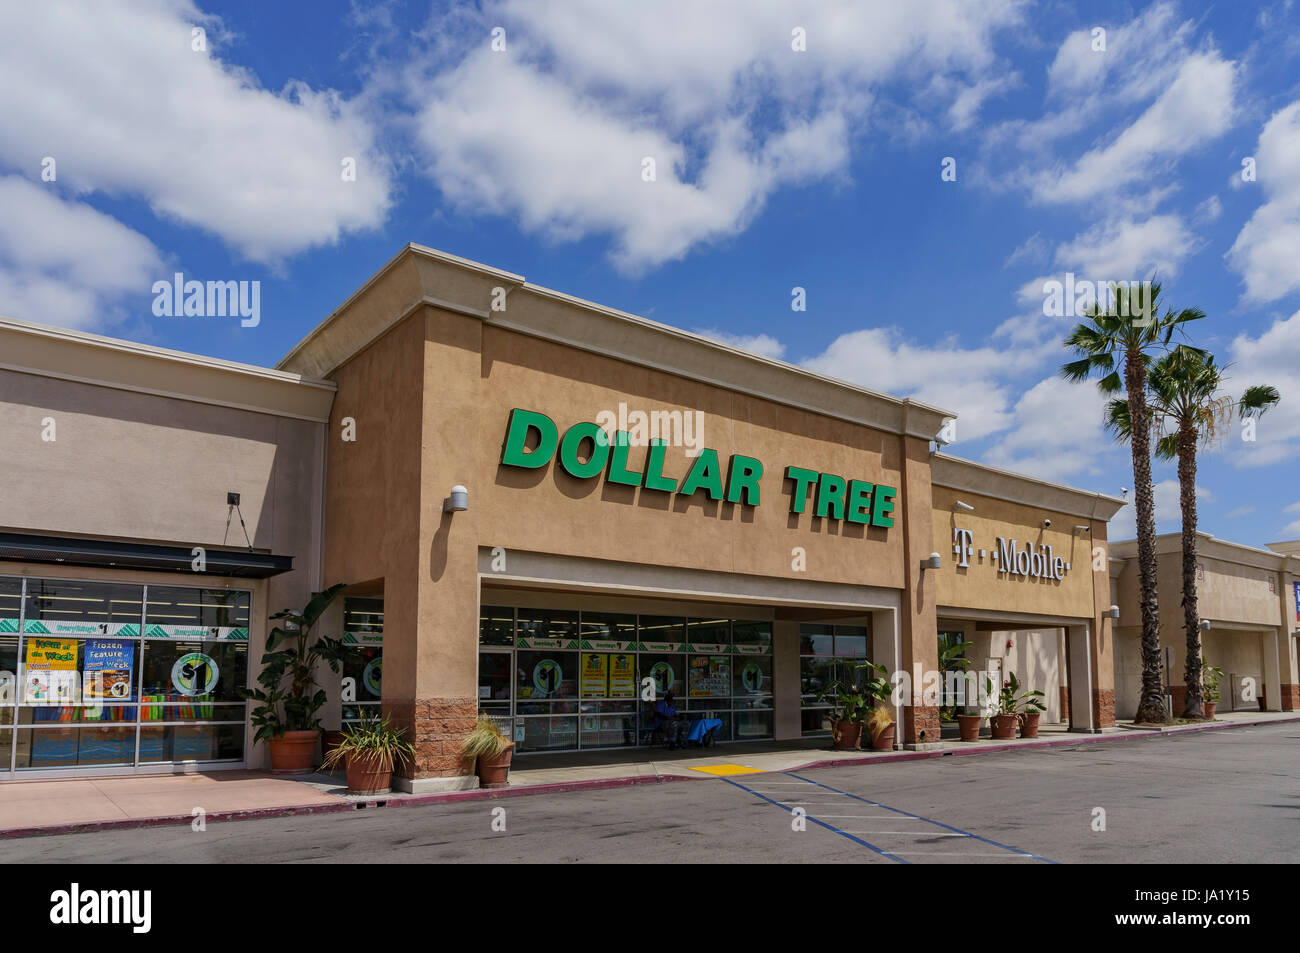 Los Angeles, Mai 25: Außenansicht des Haushalts Store - Dollar Tree am 25. Mai 2017 in Los Angeles, Kalifornien, Vereinigte Staaten von Amerika Stockfoto